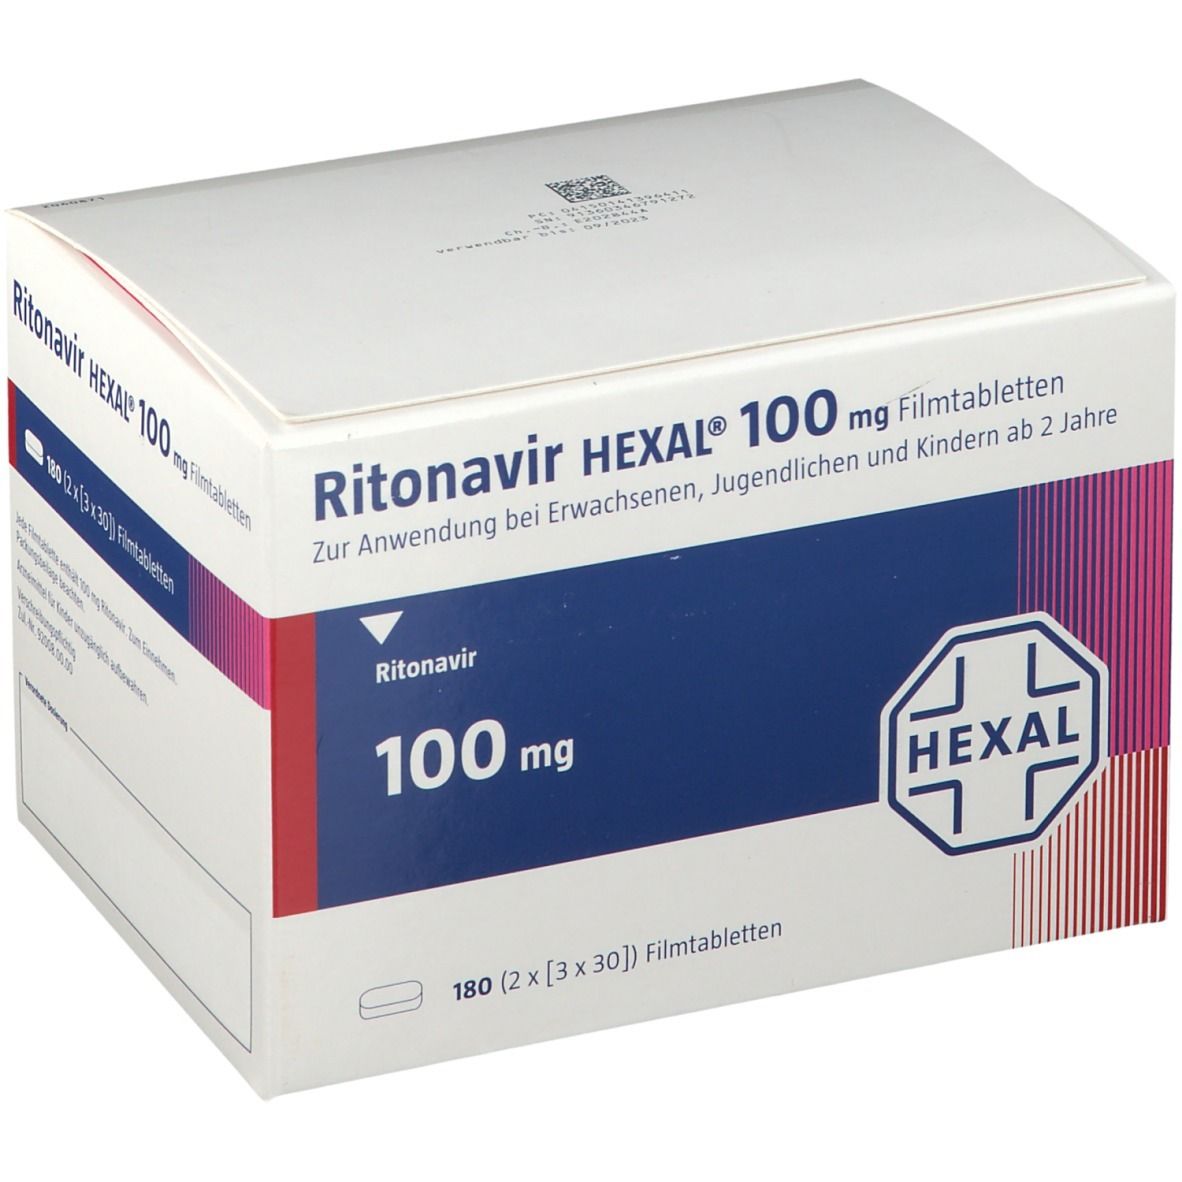 Ritonavir HEXAL® 100 mg